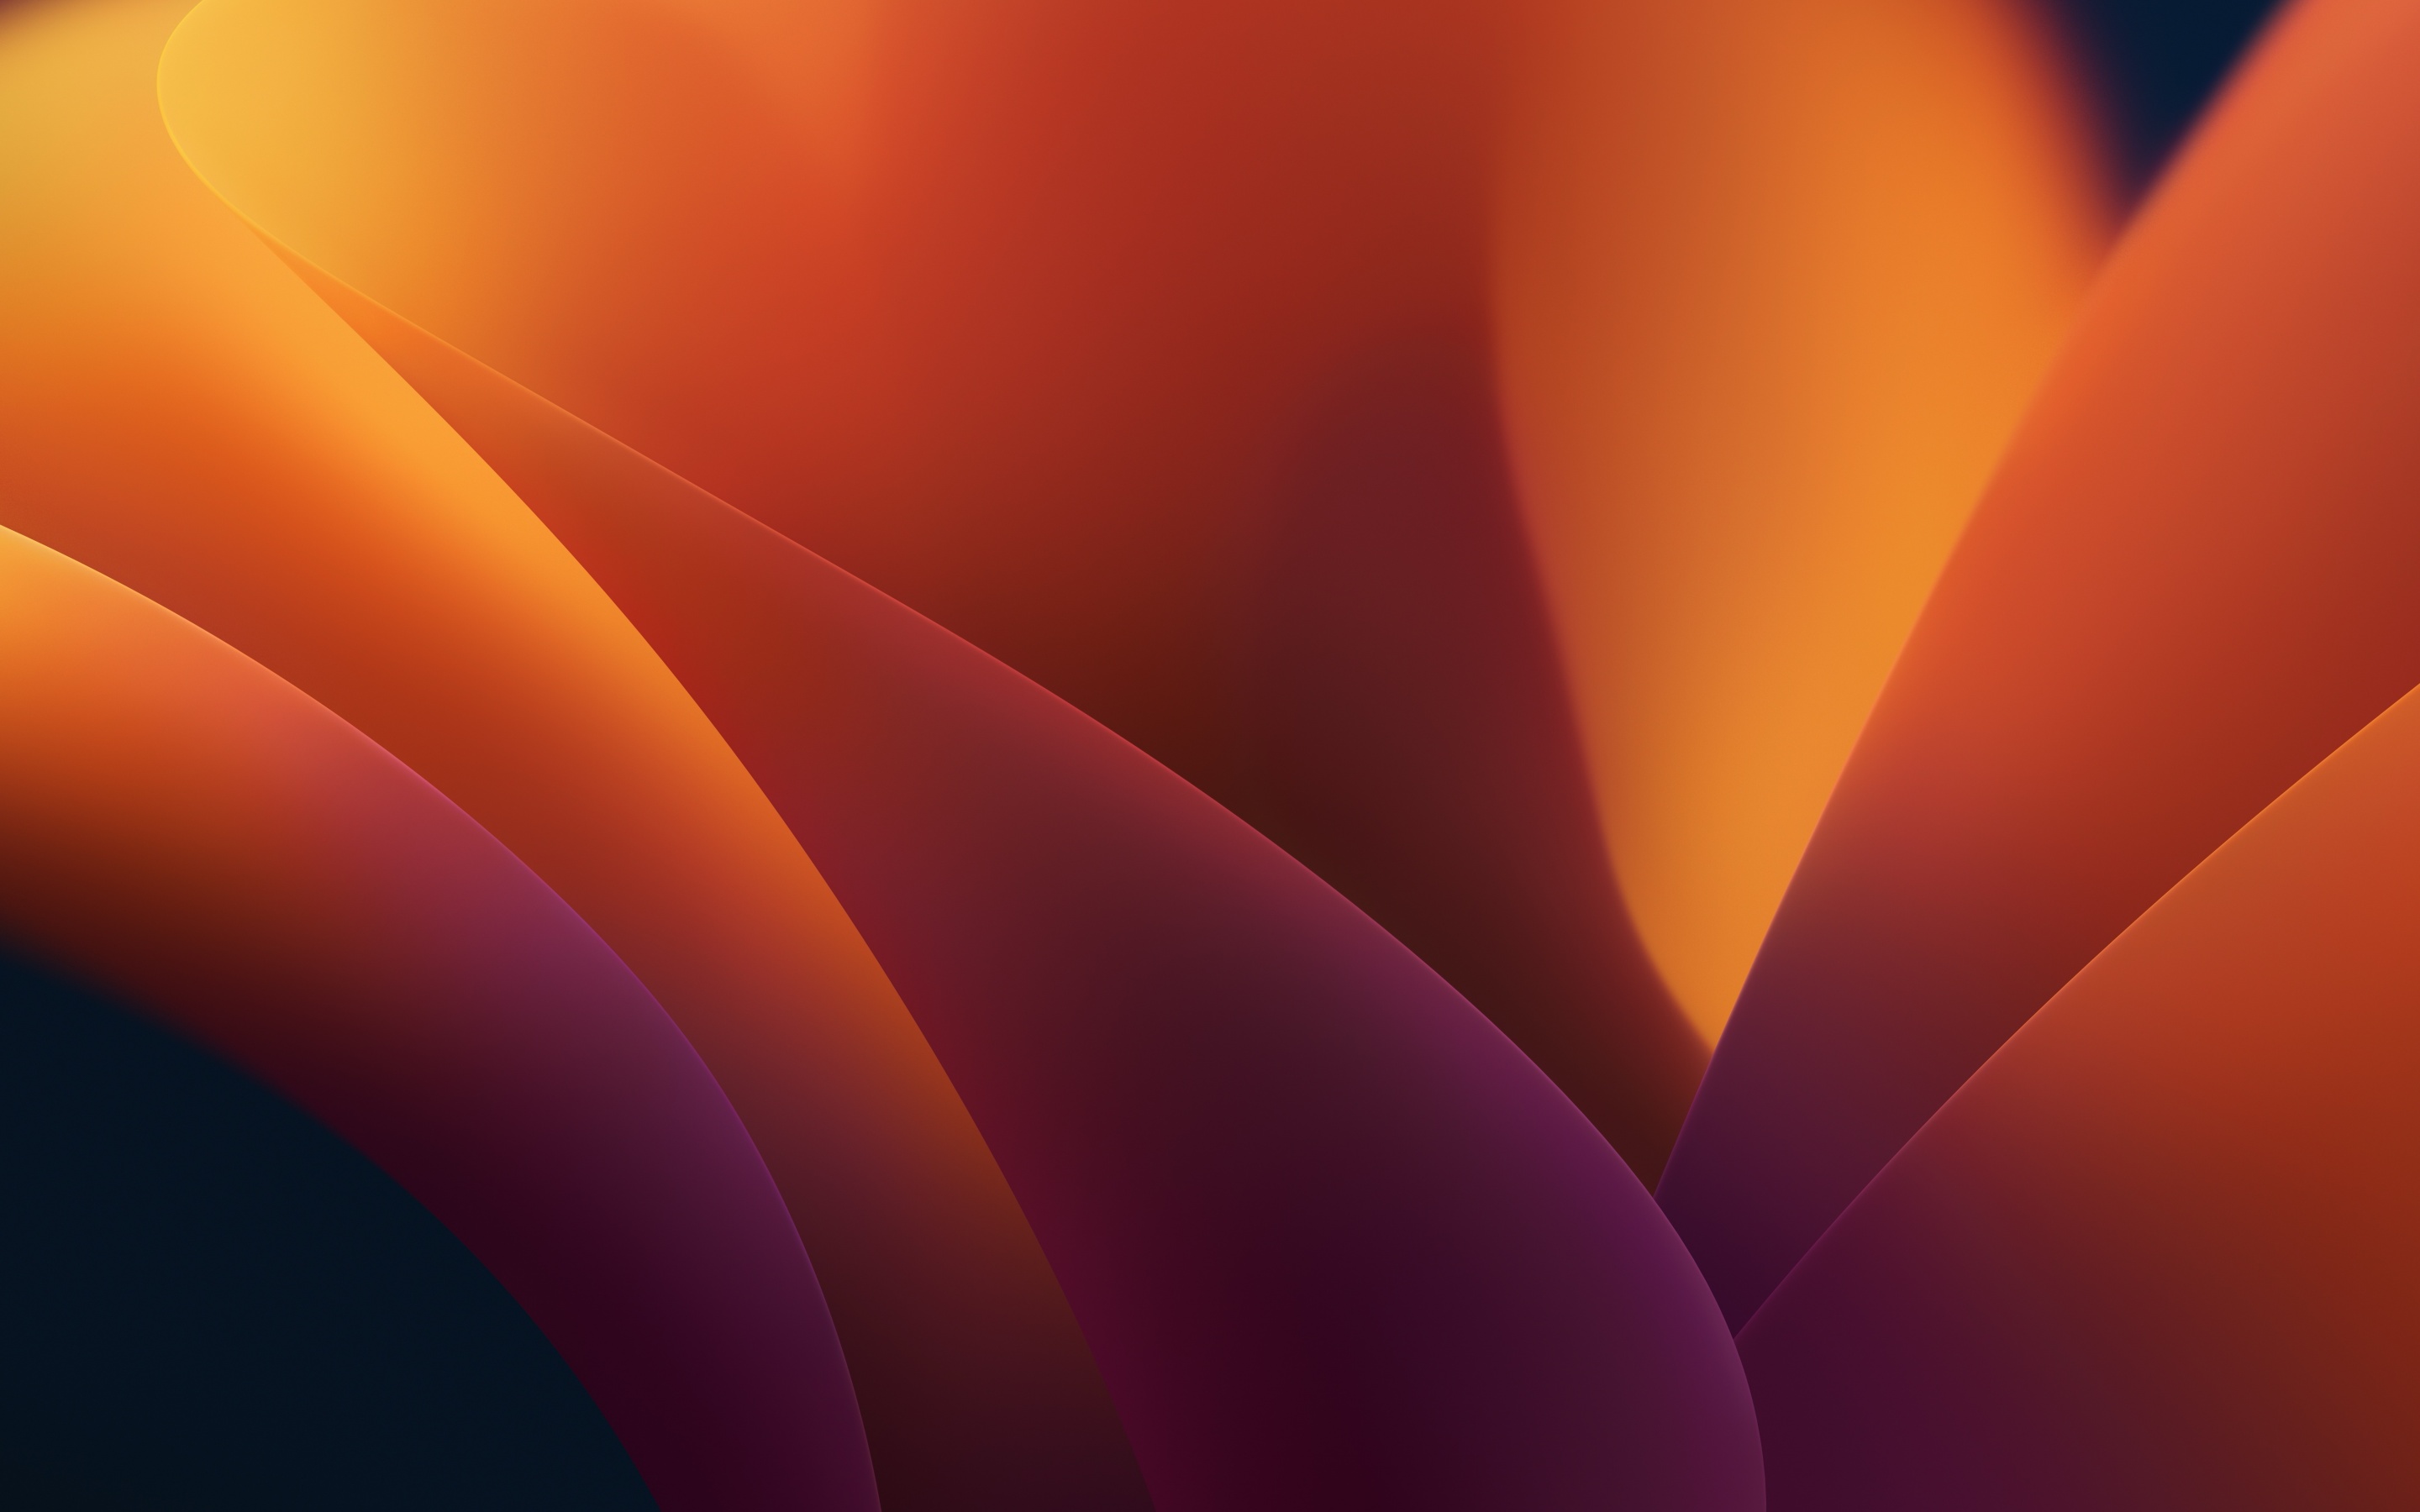 Xem thôi cũng đã thấy tầm ảnh hưởng của màu sắc trên những bức hình nền Abstract của macOS Ventura đến chúng ta rồi. Được tạo ra với độ phân giải 4K, lấy cảm hứng từ macOS 13 và 2022, chắc chắn sẽ khiến bạn cảm thấy thú vị và ngạc nhiên.